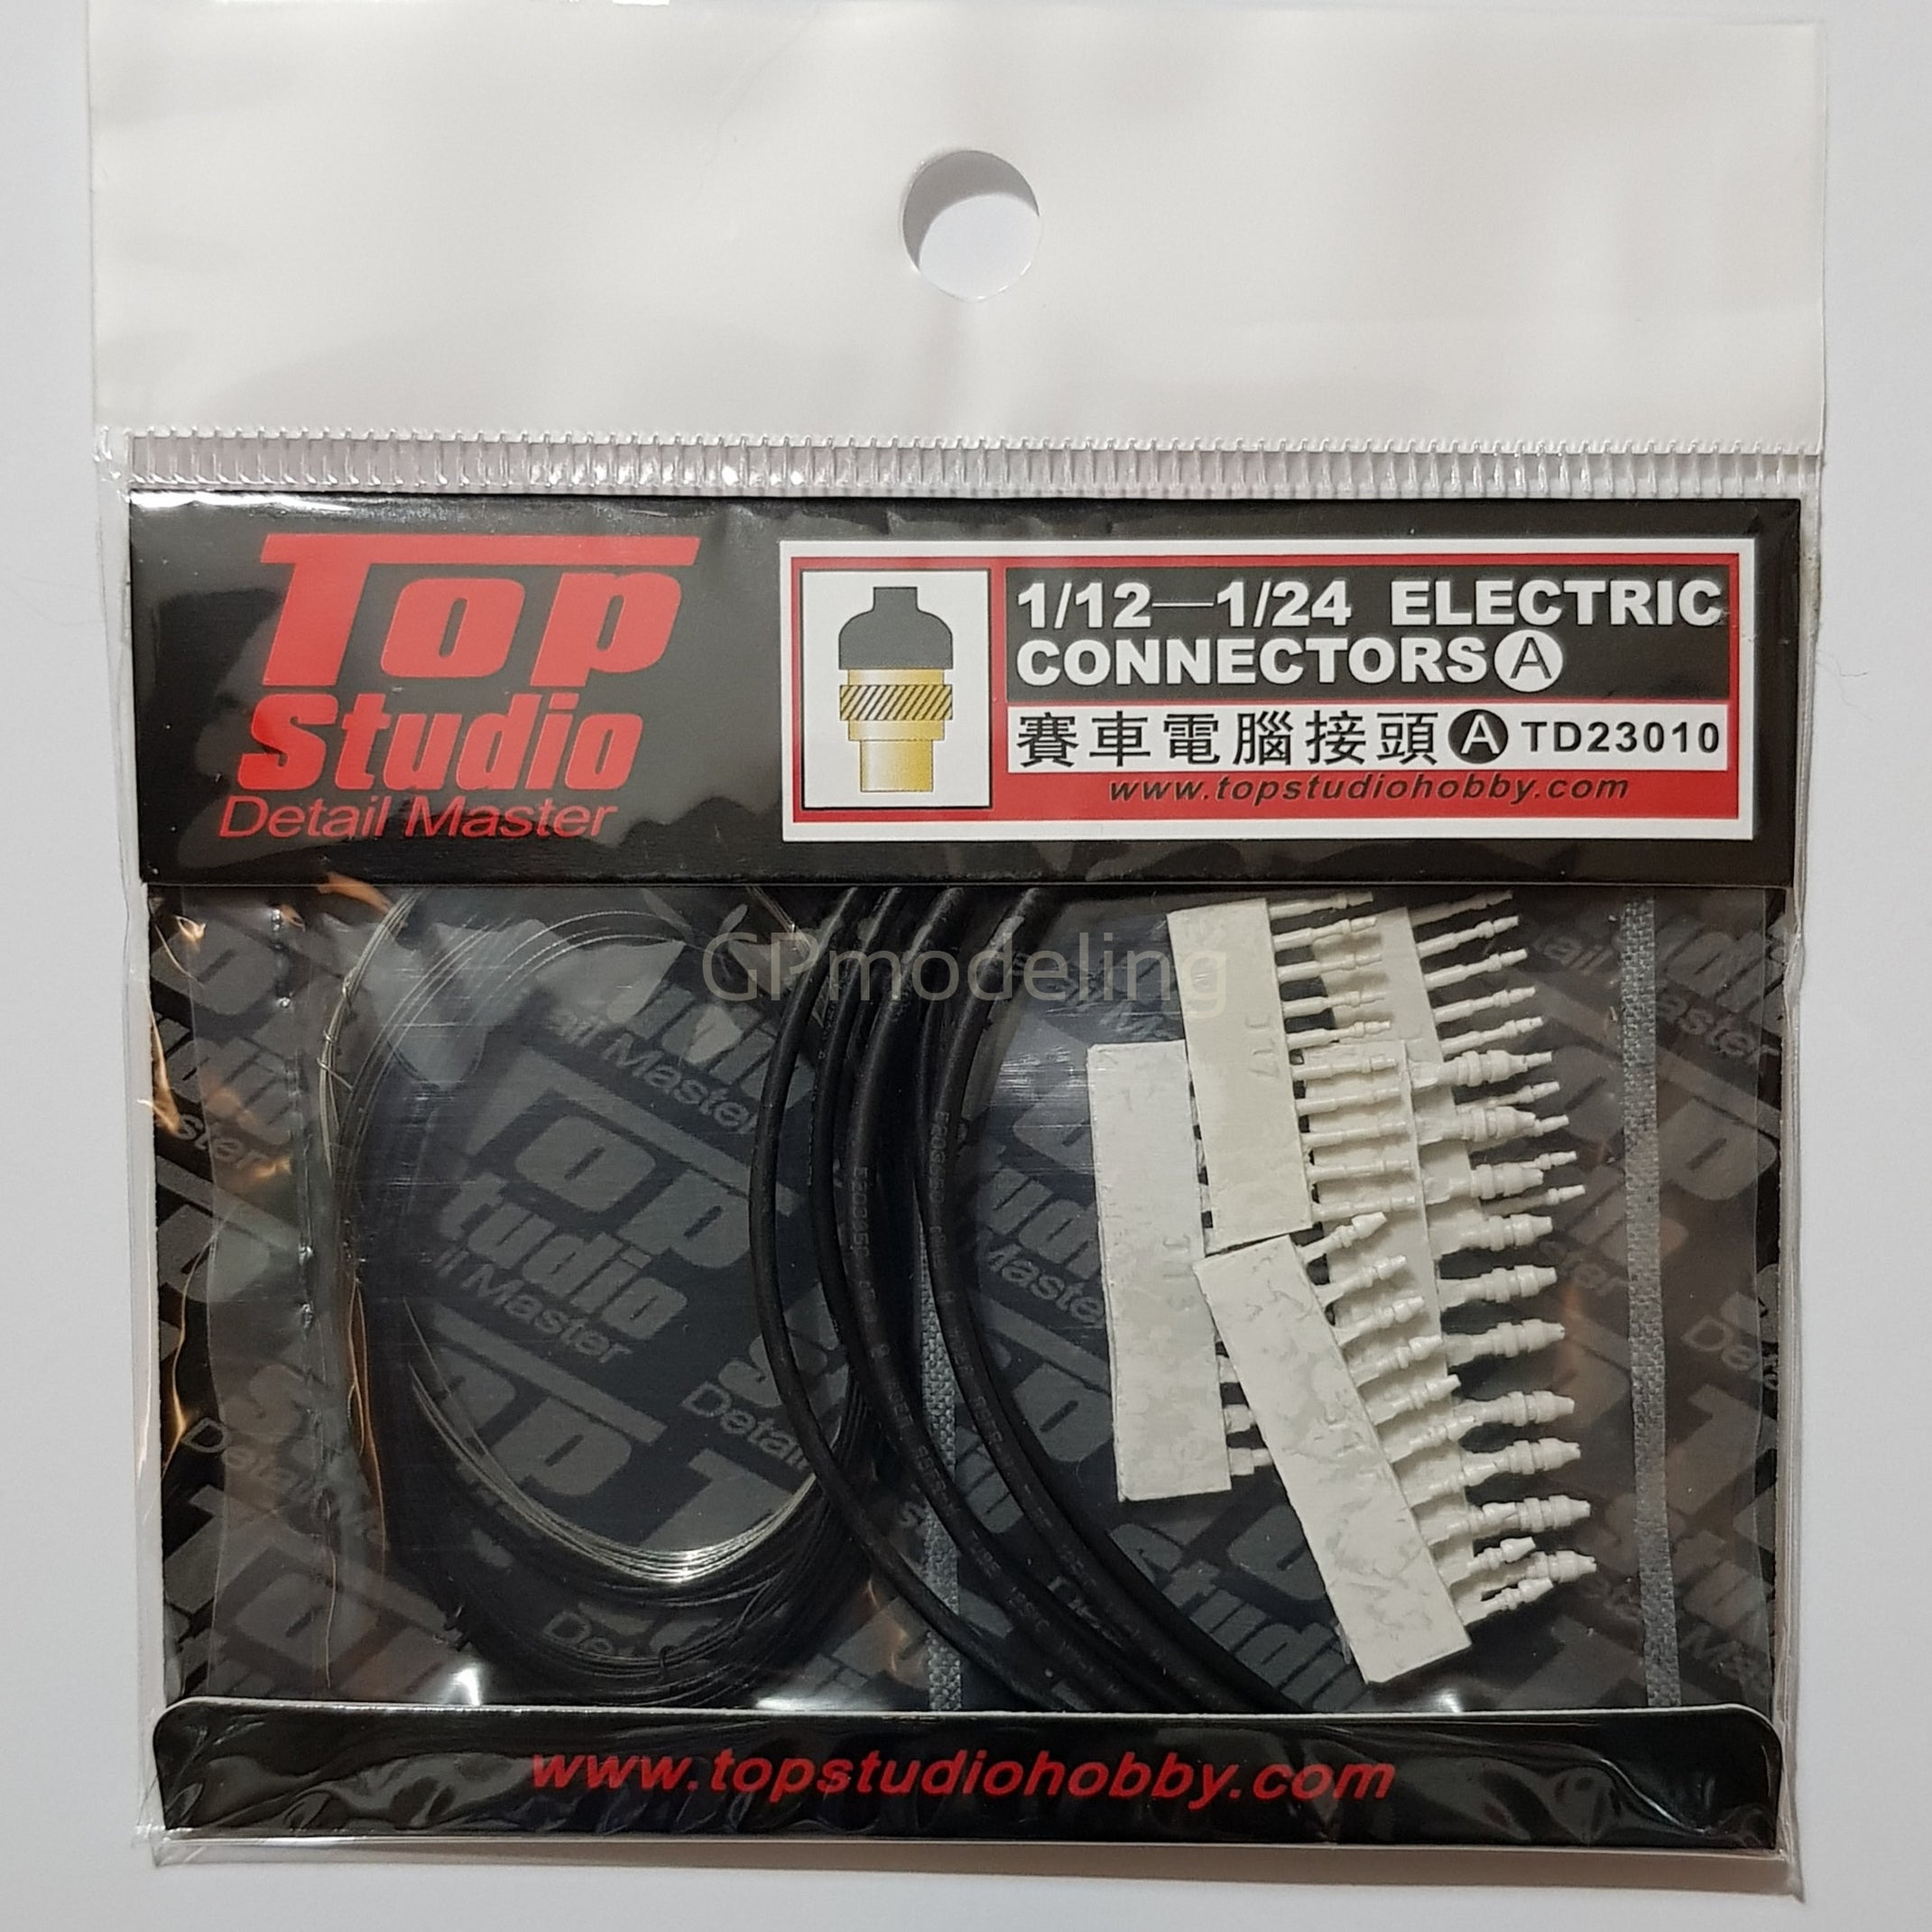 Top Studio Electric Connectors (A) 1/12 - 1/24 TD23010